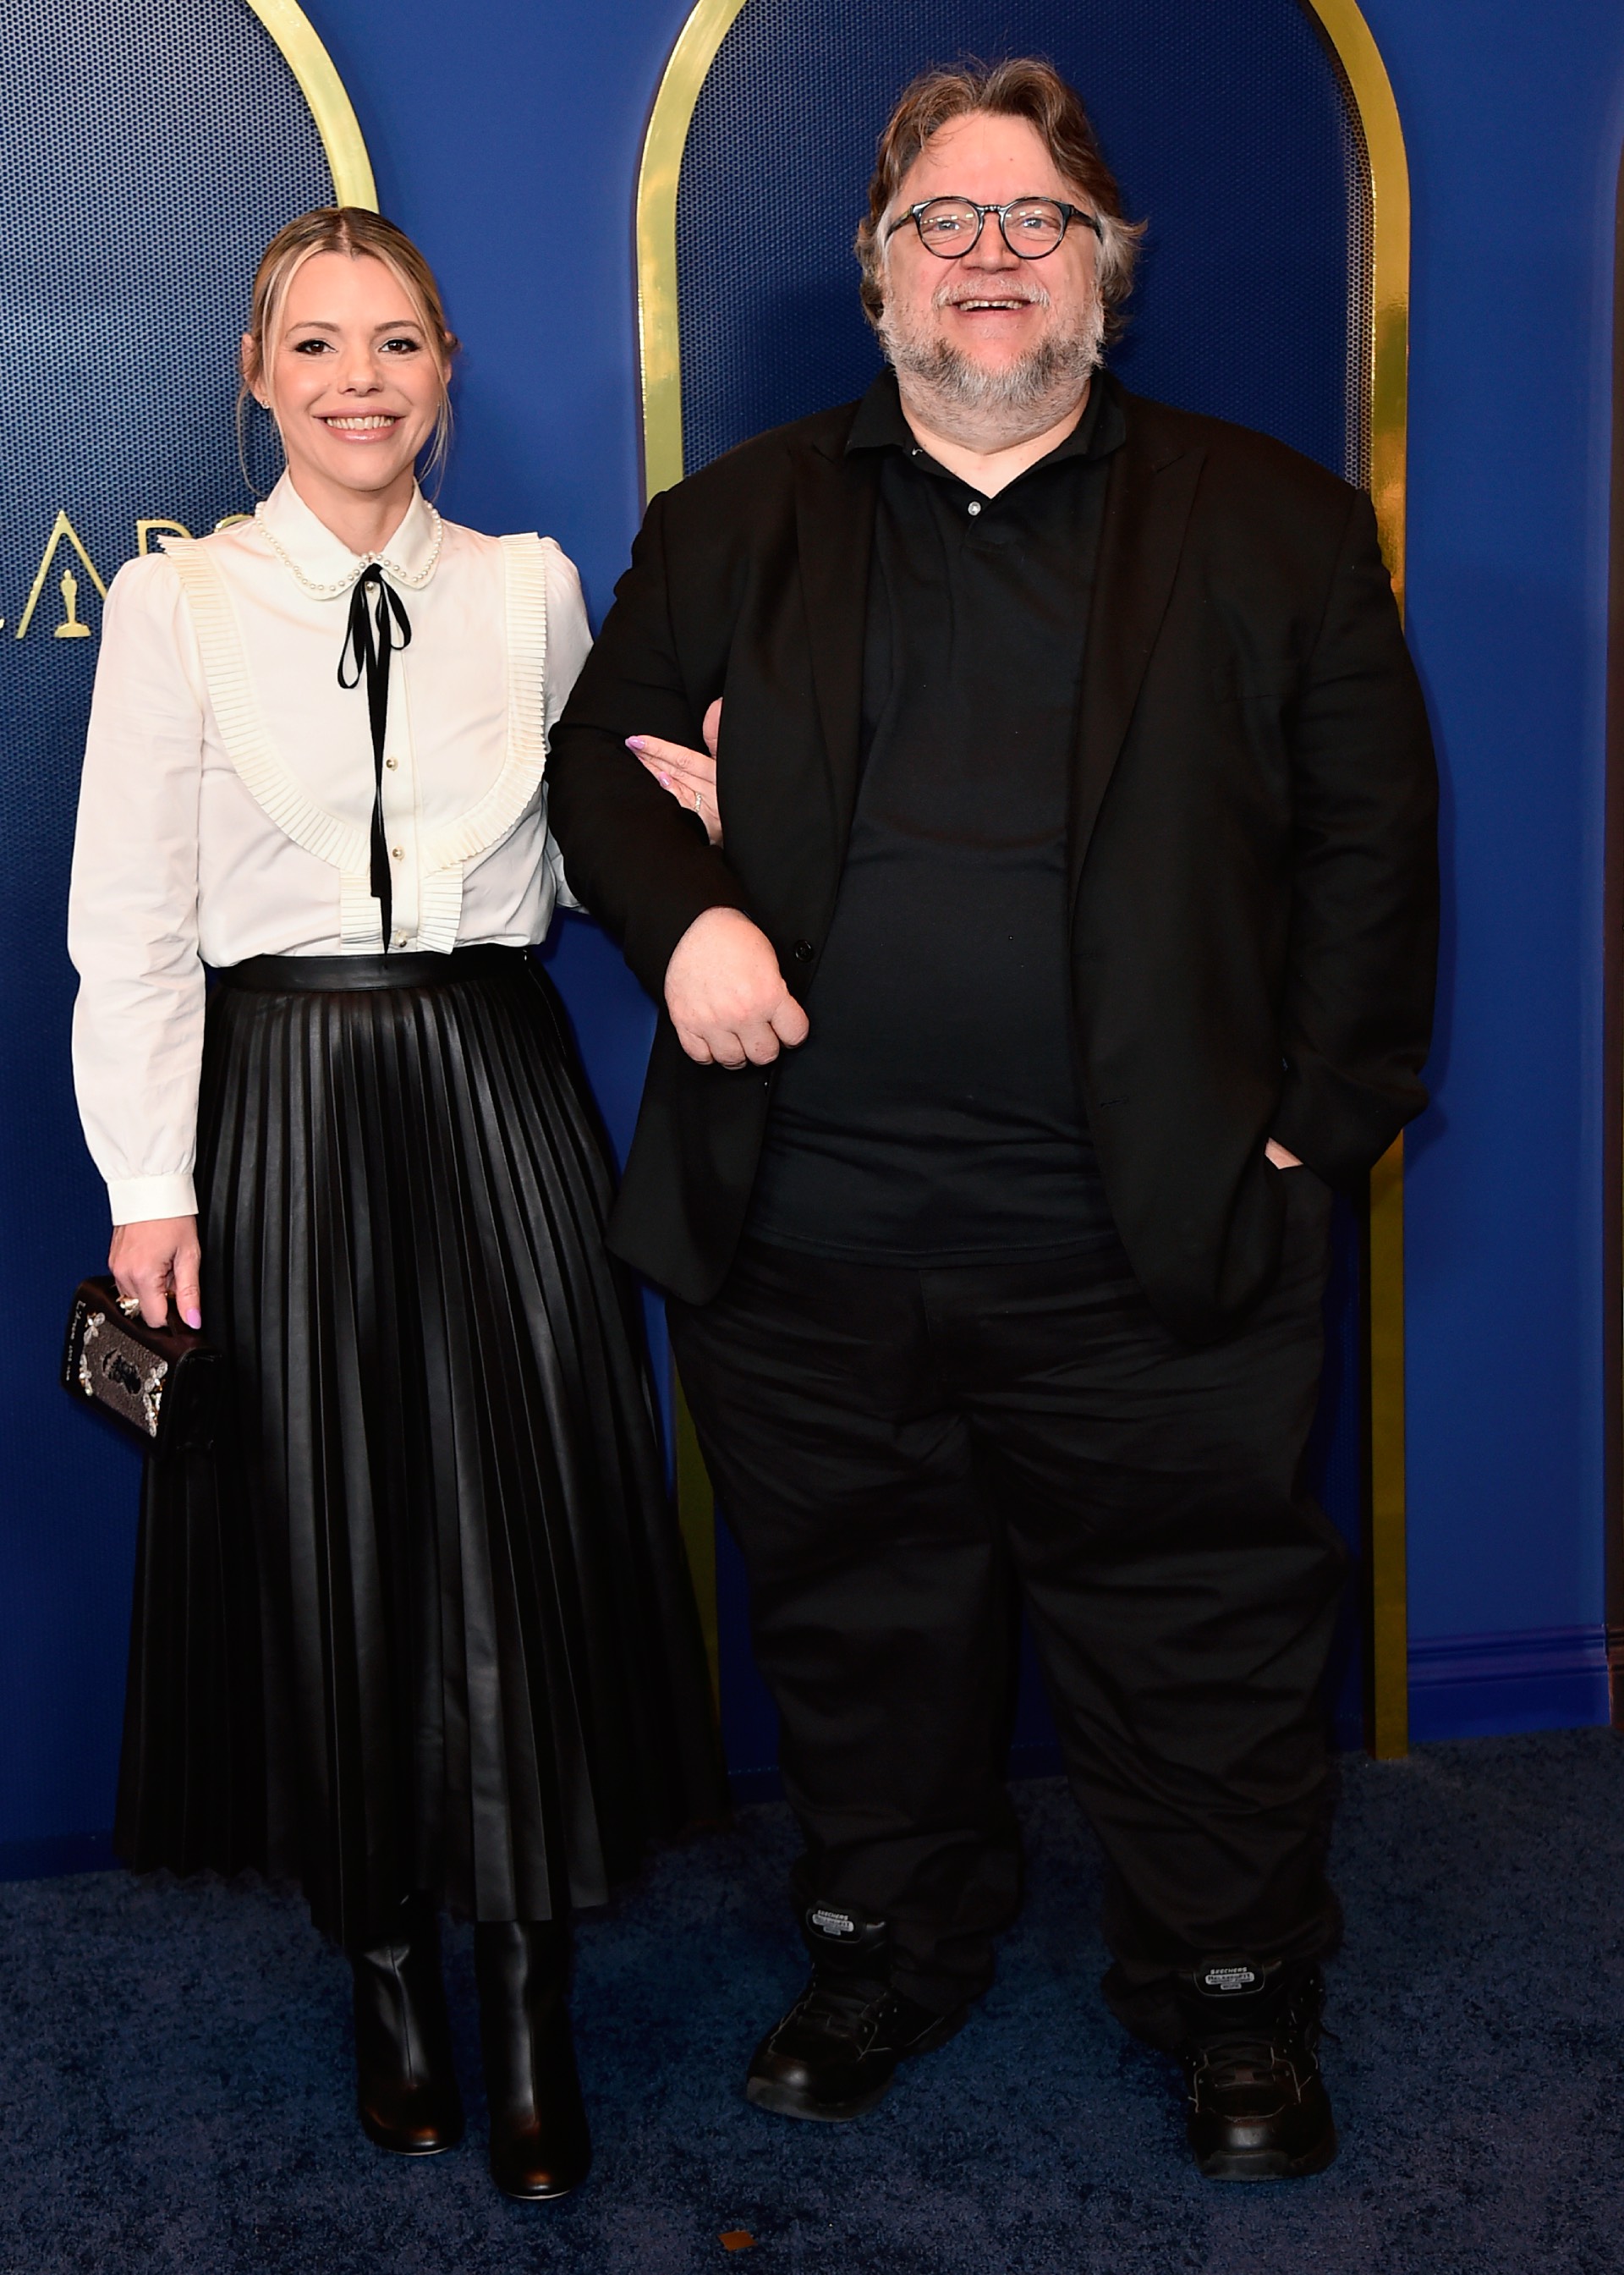 Kim Morgan, left, and Guillermo del Toro